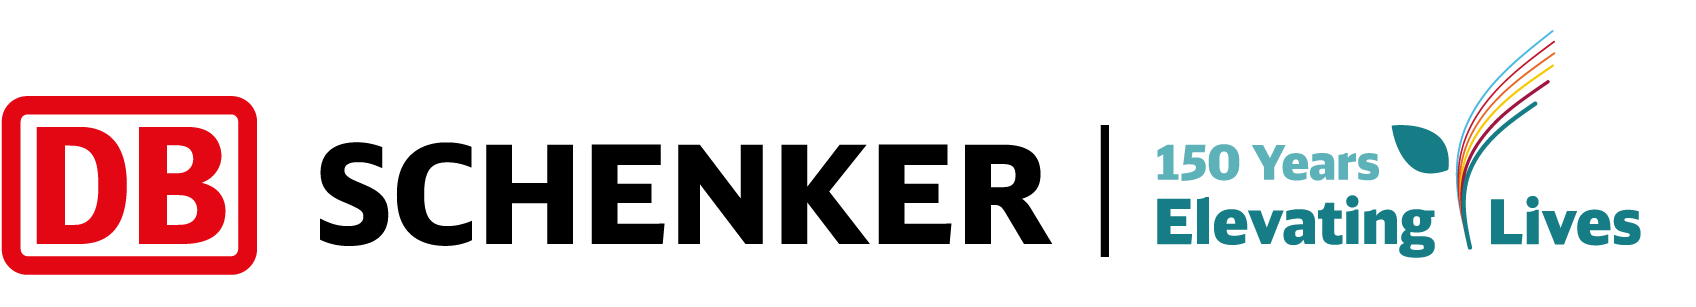 DB Schenker Logo - 150 Years